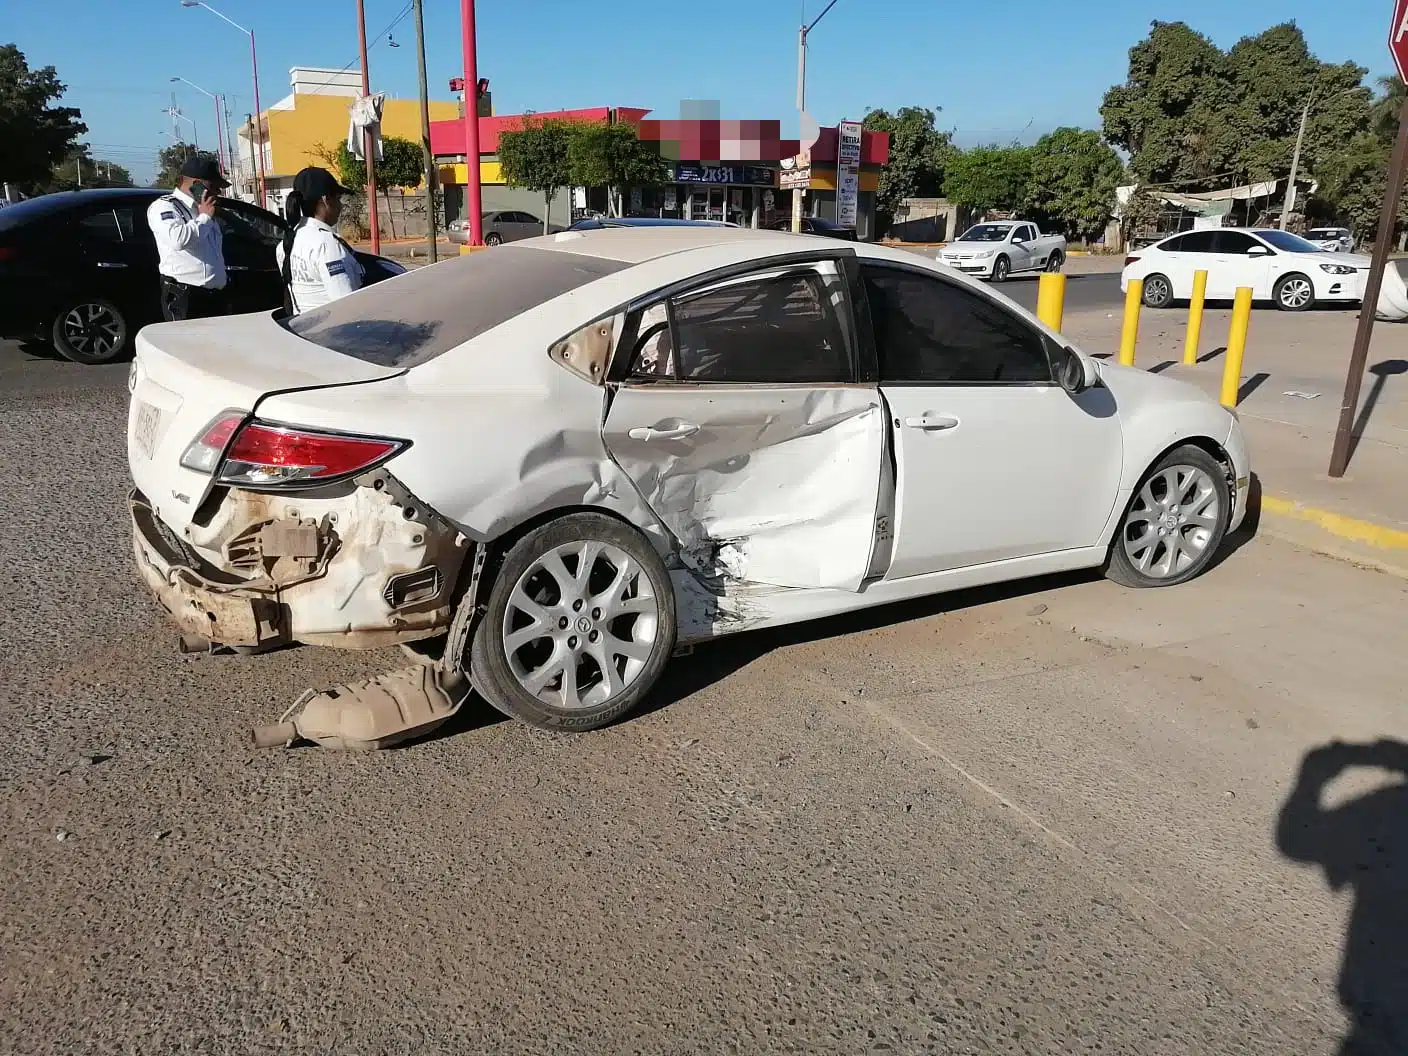 Vehículo de la marca Mazda color blanco tras accidente en Guamúchil